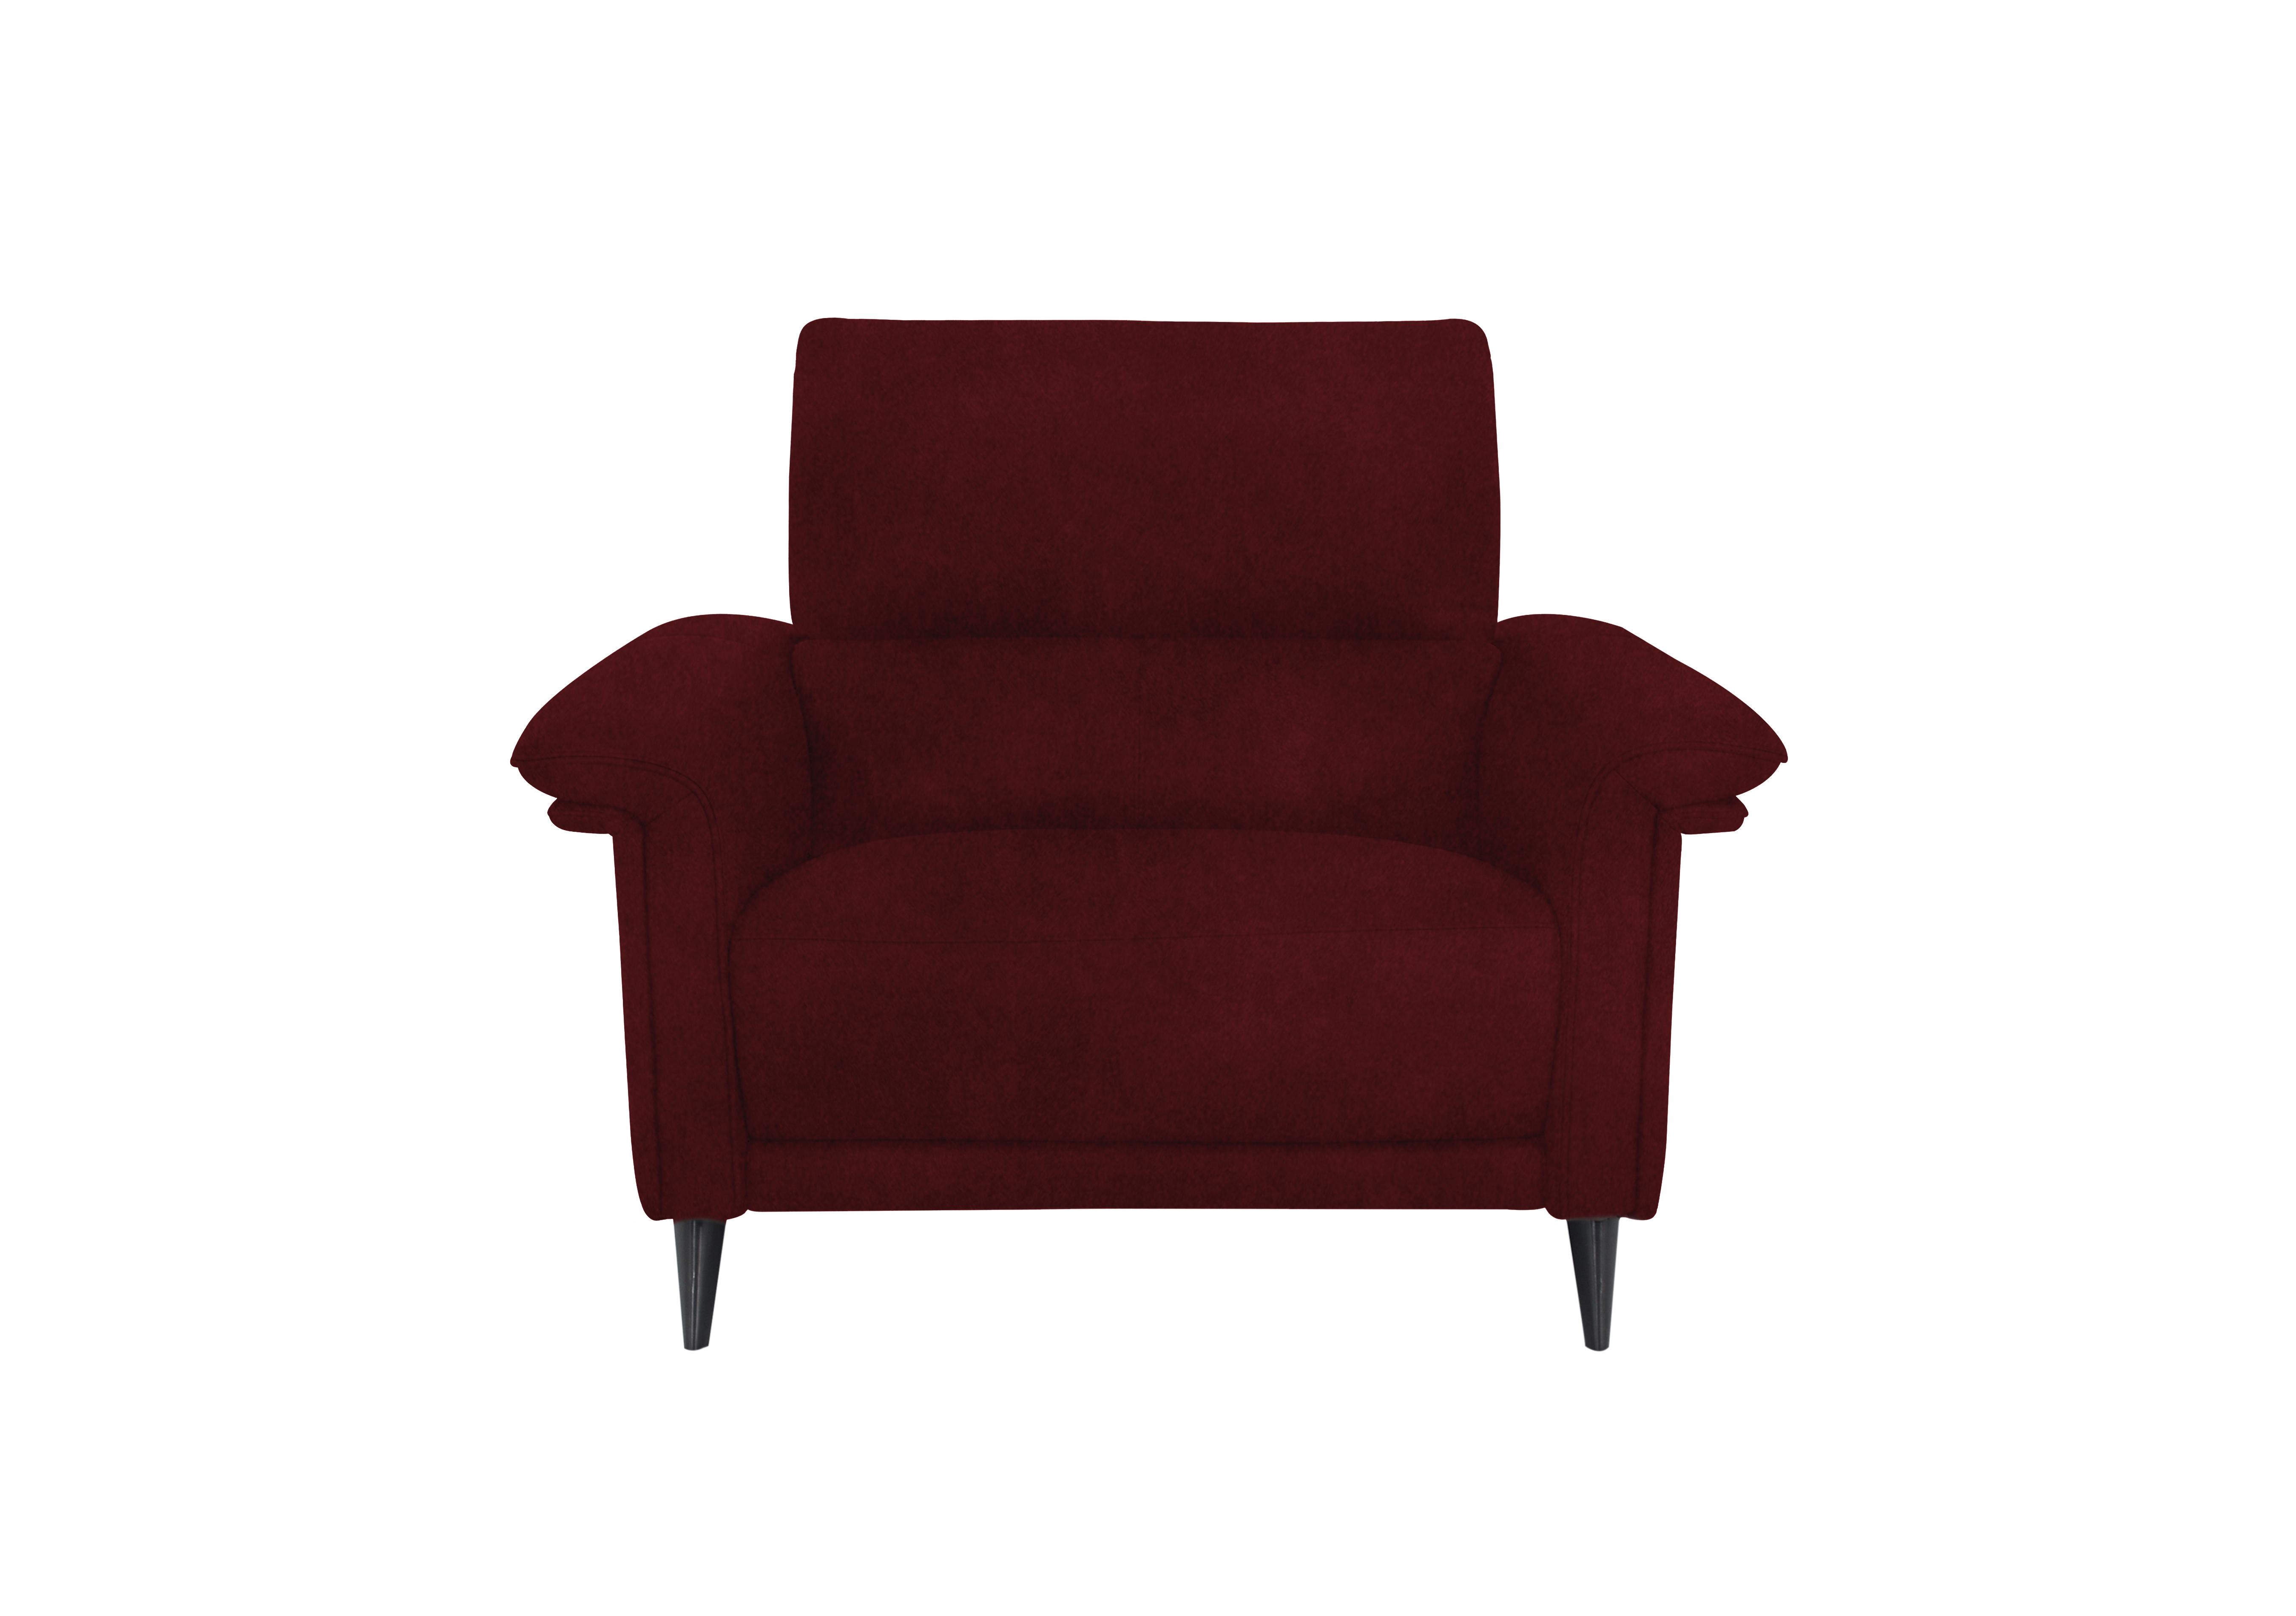 Huxley Fabric Chair in Fab-Meg-R65 Burgundy on Furniture Village